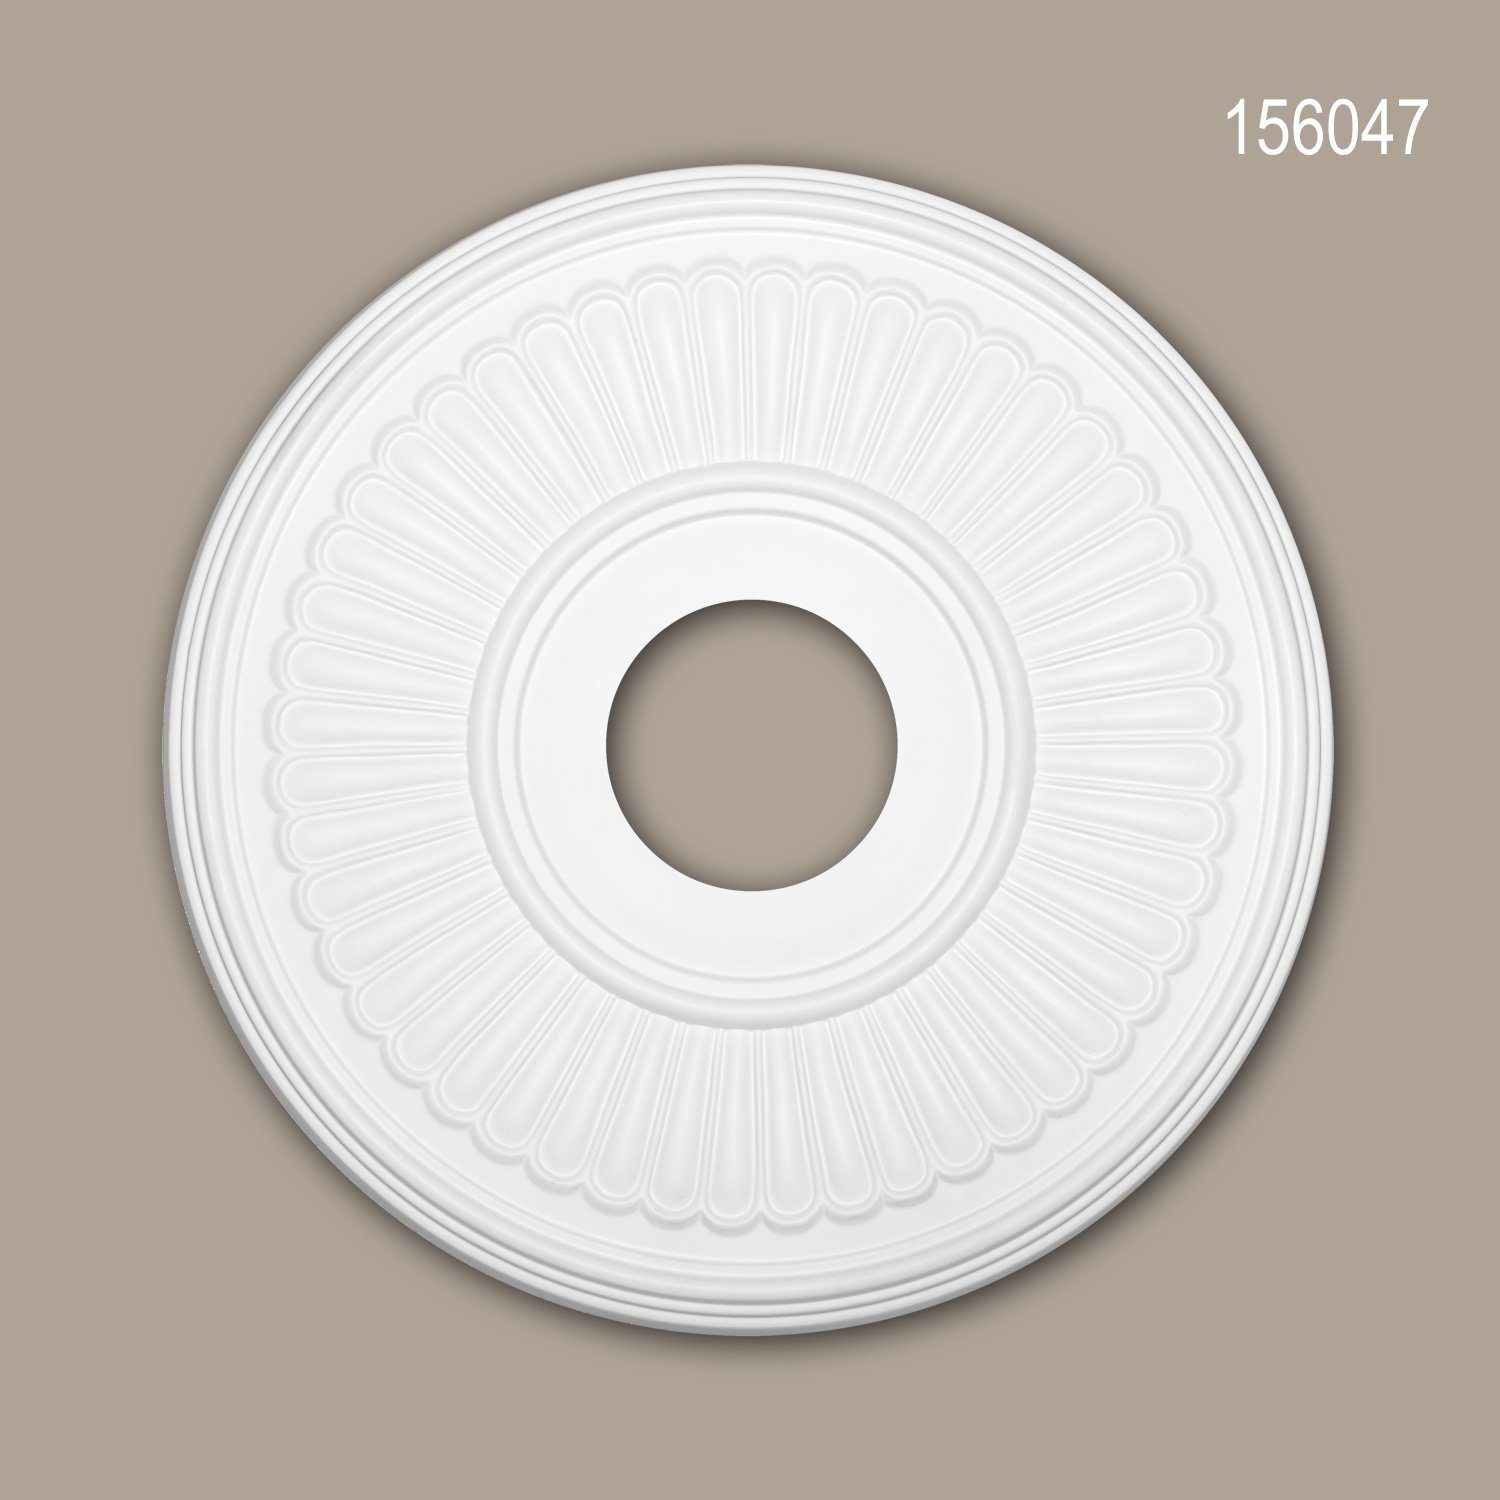 Profhome Decken-Rosette 156047 (Rosette, 1 St., Deckenrosette, Medallion, Stuckrosette, Deckenelement, Zierelement, Durchmesser 40,4 cm), weiß, vorgrundiert, Stil: Neo-Klassizismus